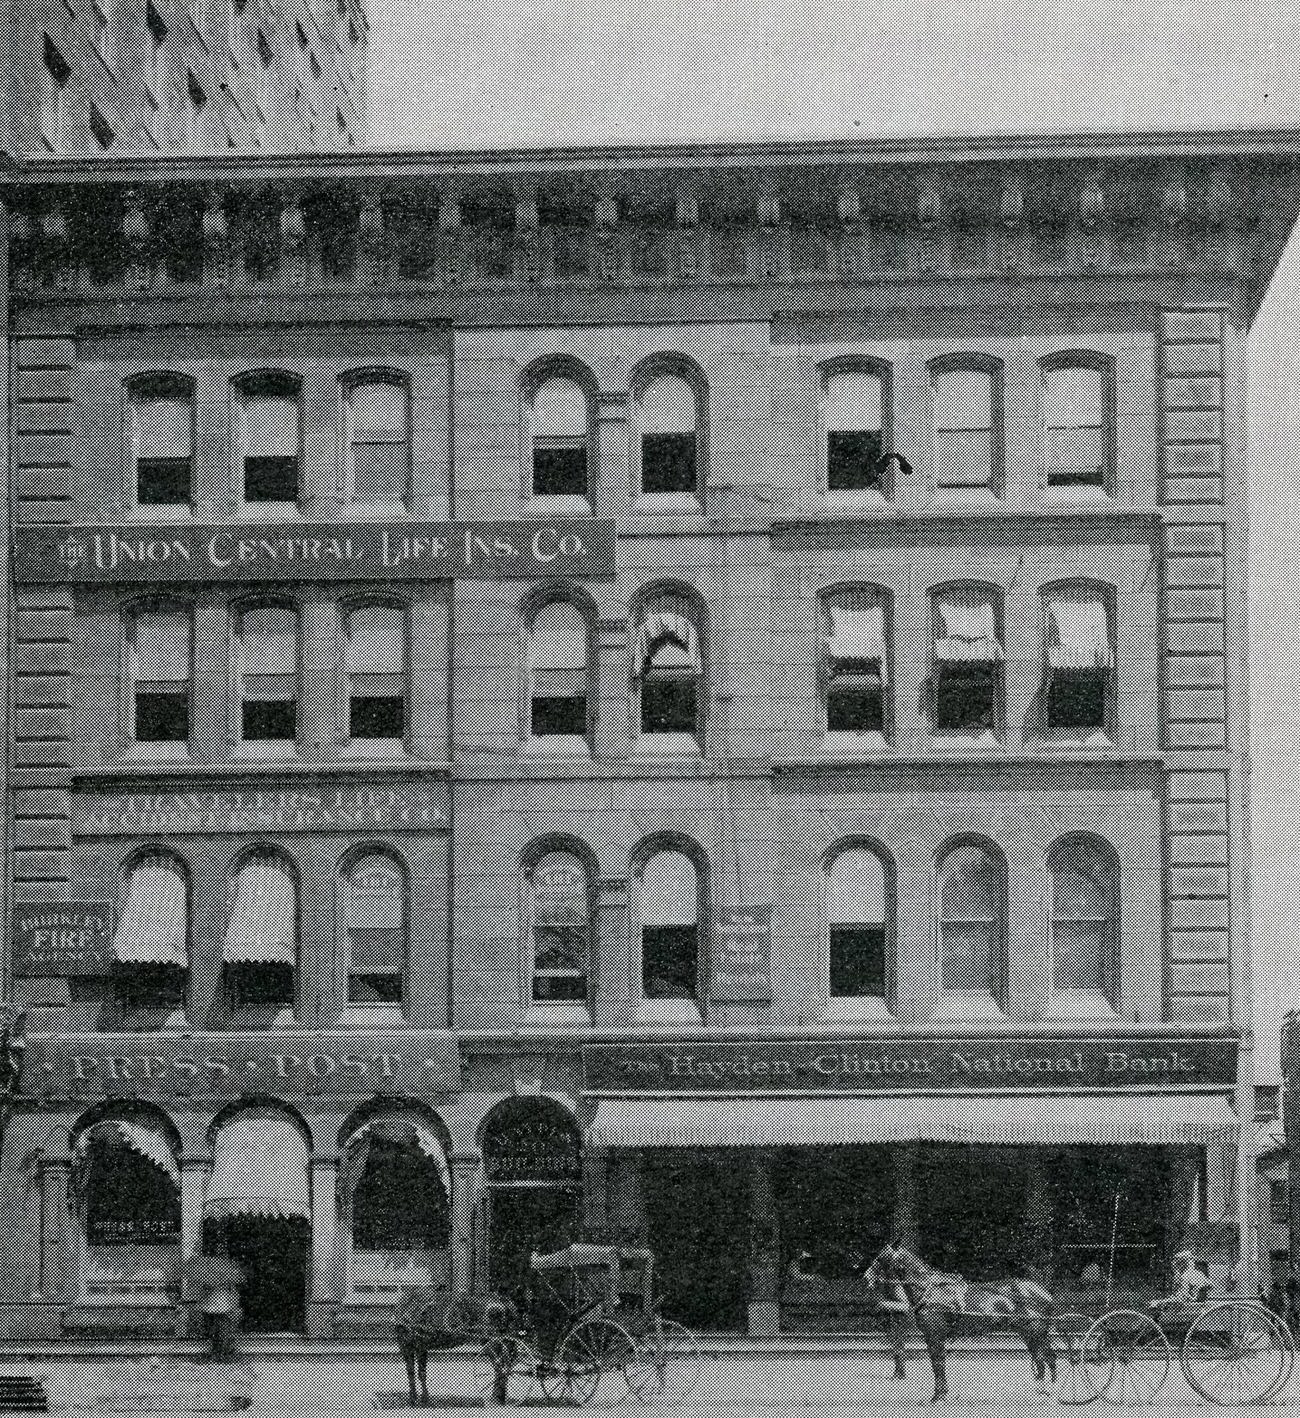 Hayden-Clinton National Bank, established in 1900, oldest building on Capitol Square, 1901.